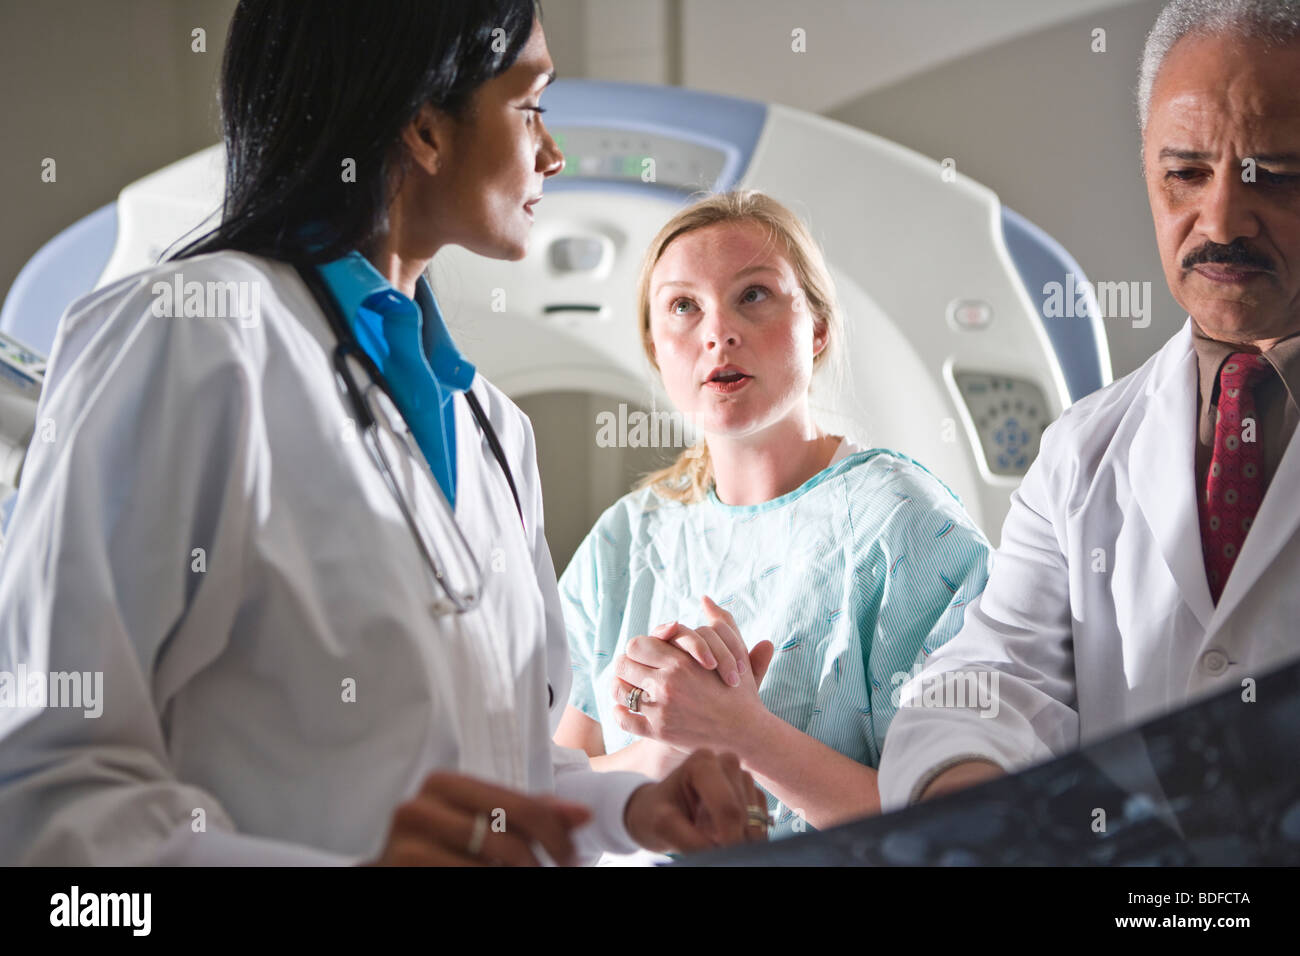 Les médecins l'examen CT scan results with patient Banque D'Images